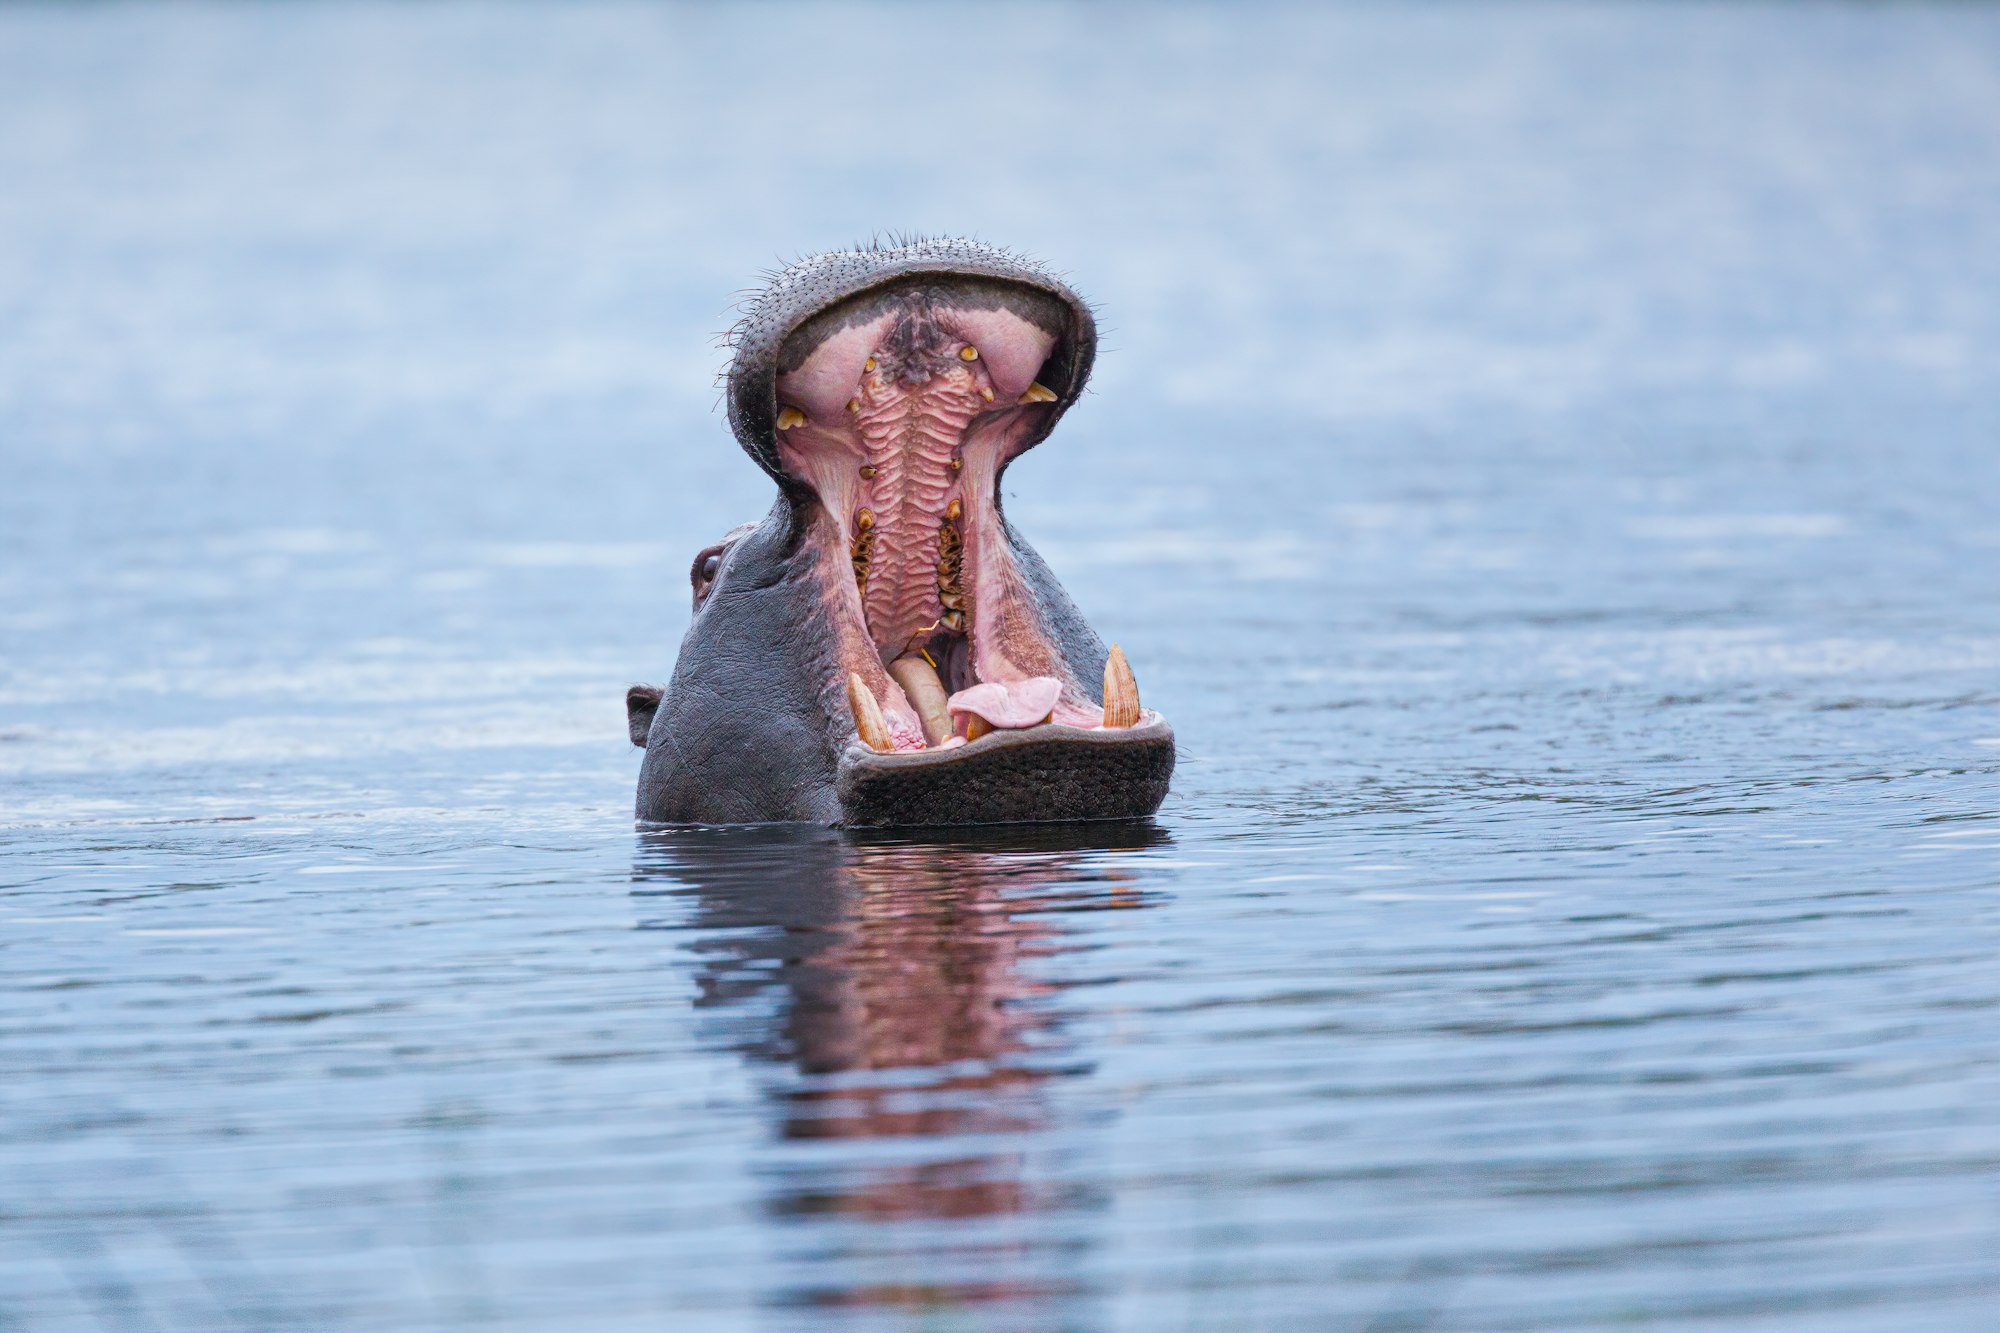 Hippopotamus (Hippopotamus amphibius) showing territorial behaviour